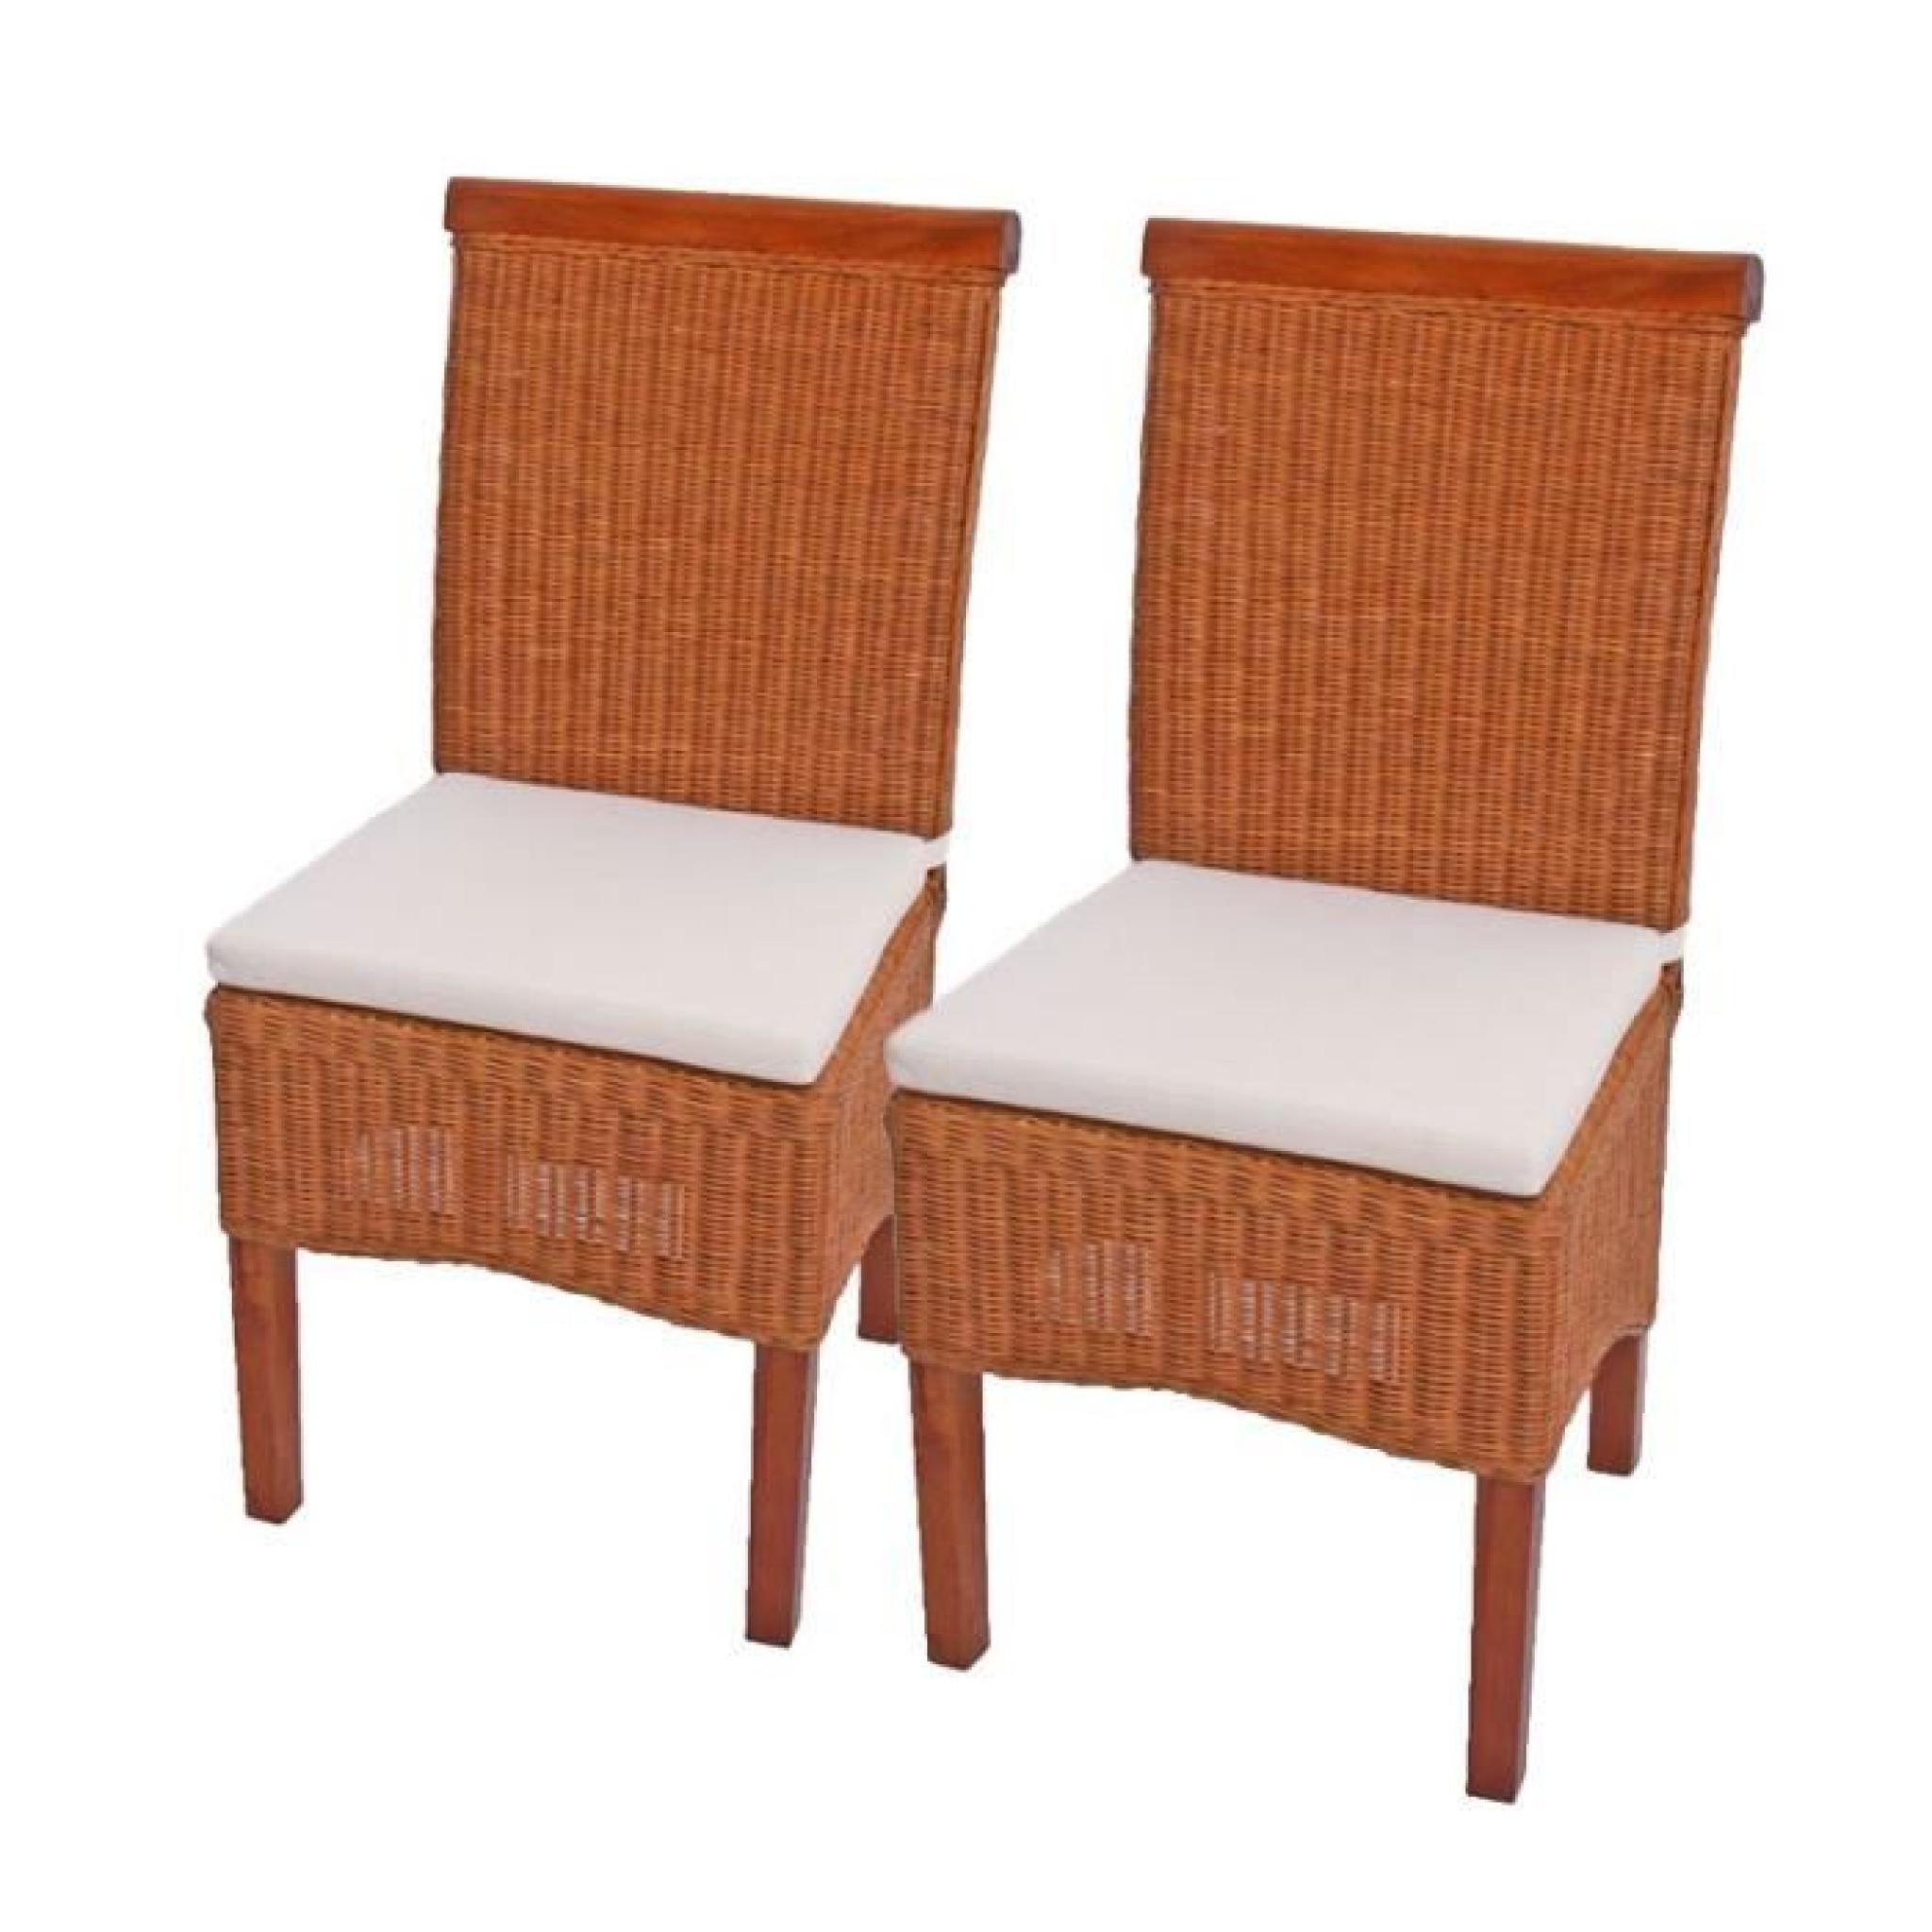 Lot de 2 chaises M42 salle à manger, rotin/bois,46x50x96cm, avec coussins. pas cher